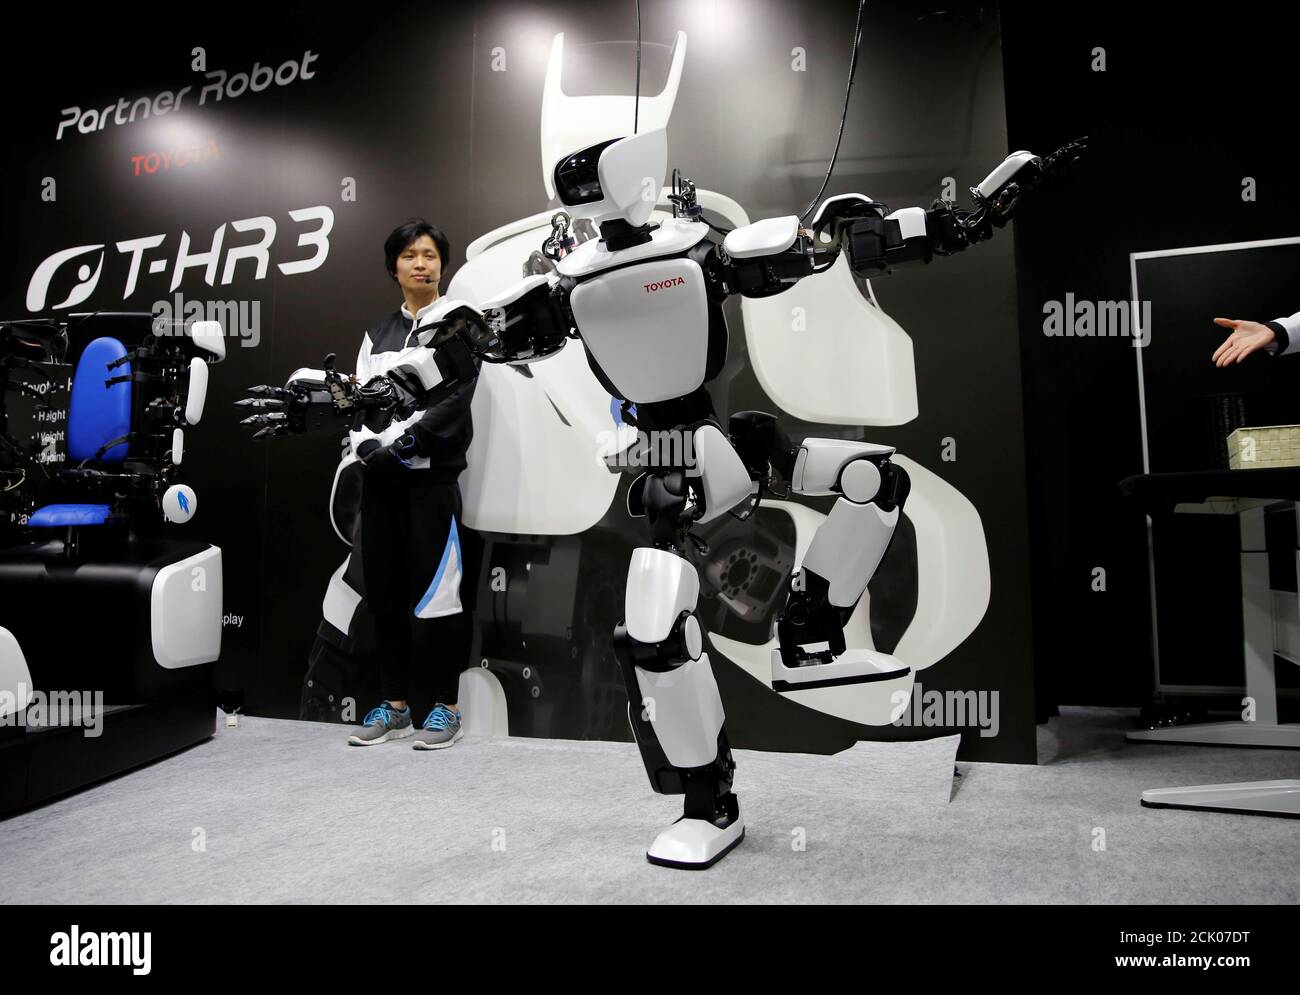 Exposición internacional de robots fotografías e imágenes de alta  resolución - Página 7 - Alamy